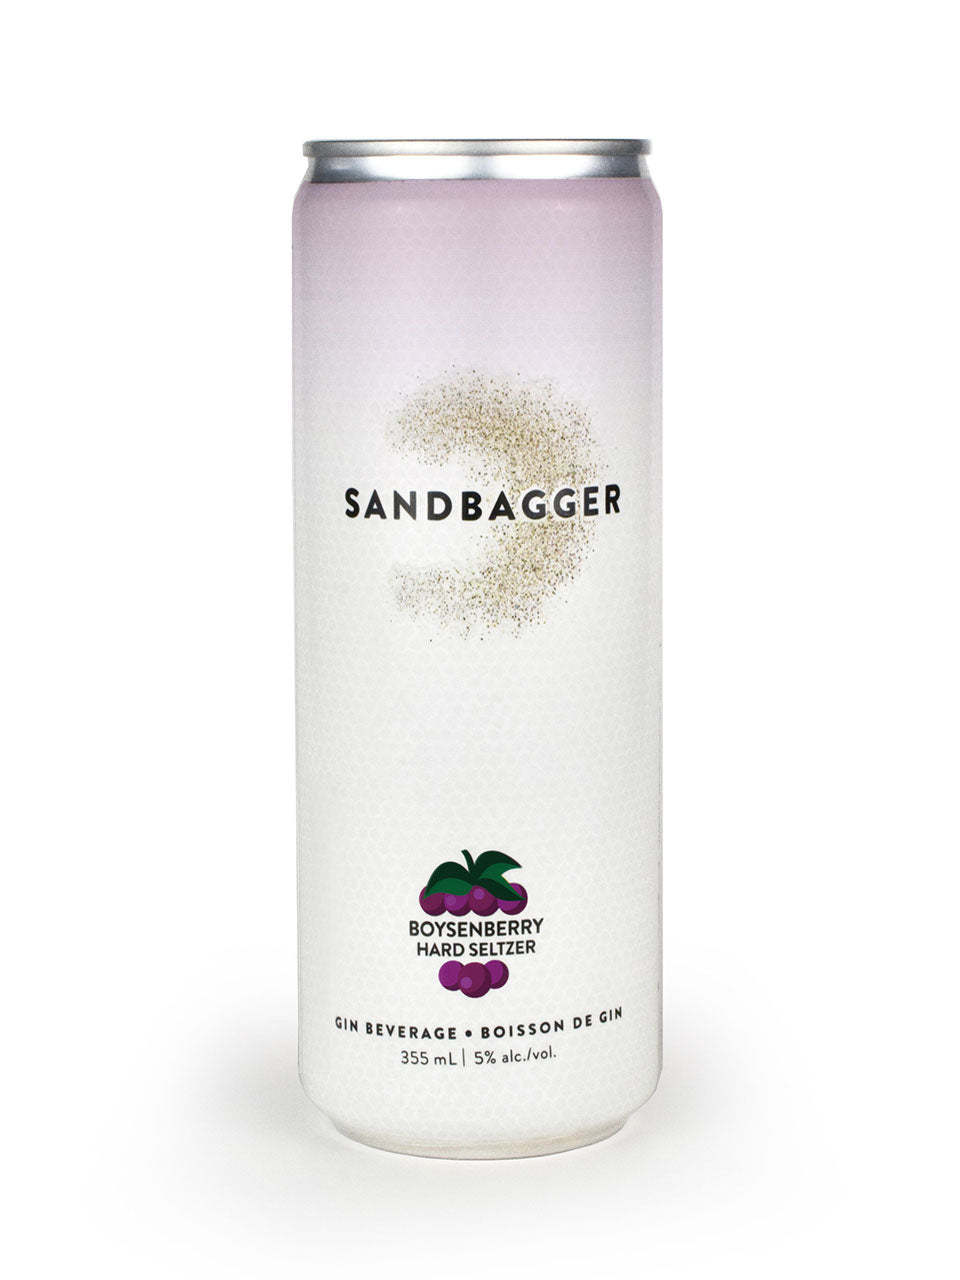 Sandbagger Boysenberry Hard Seltzer 355 ml can